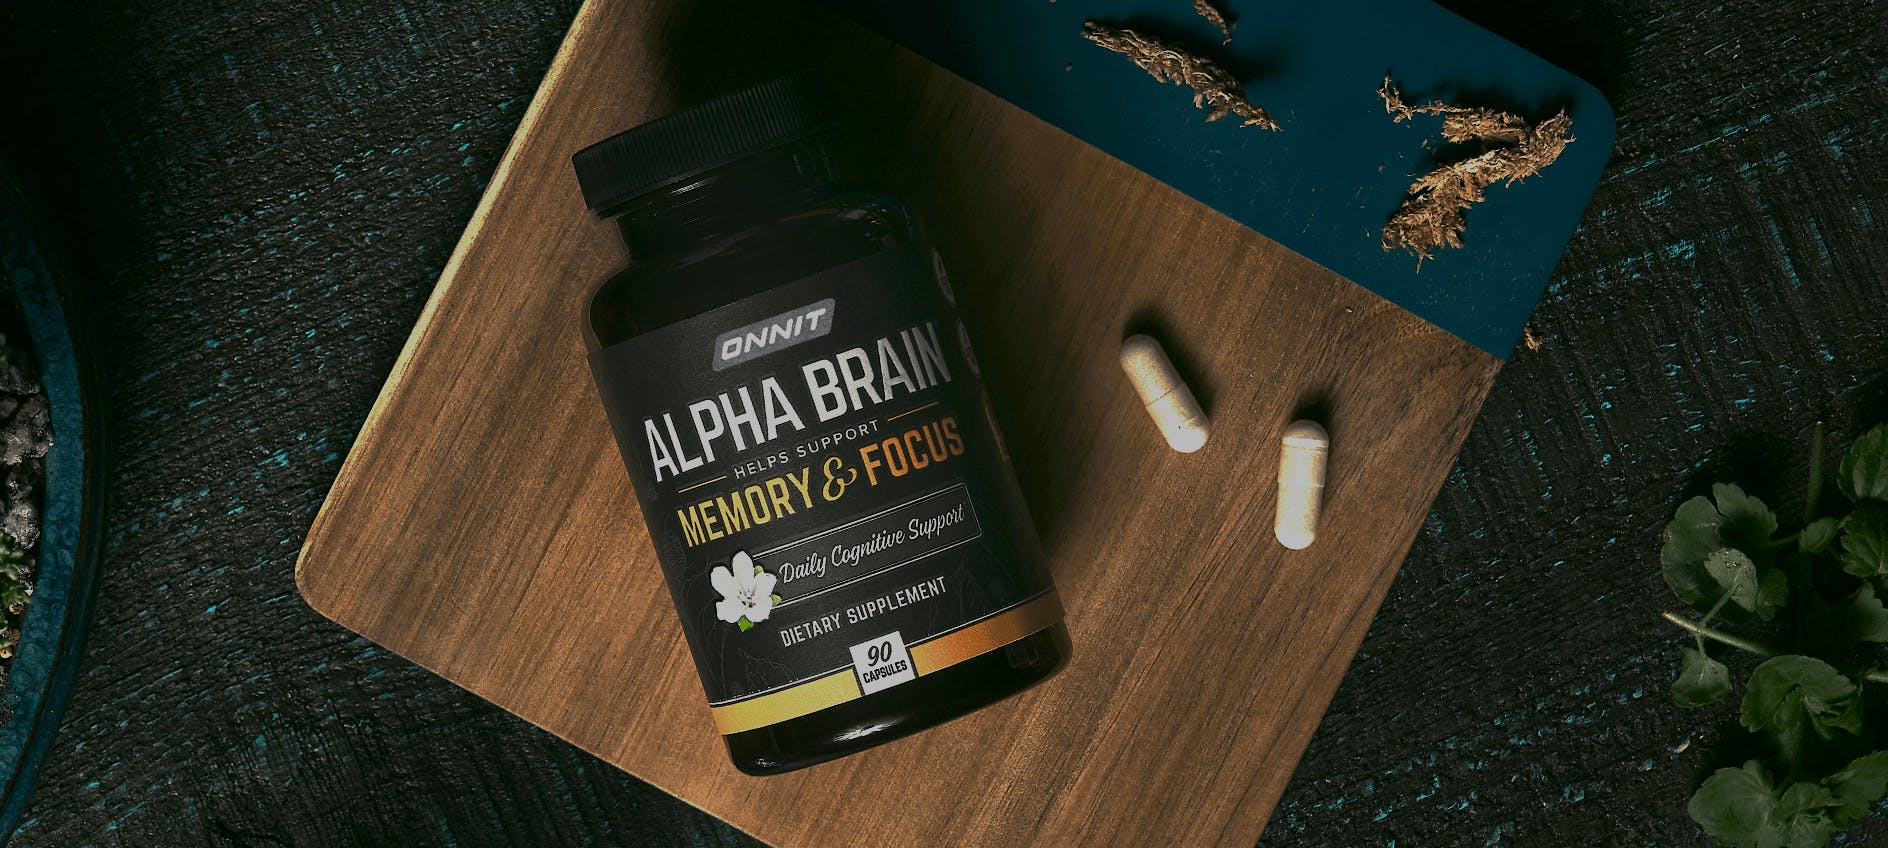 A bottle of Alpha Brain supplements